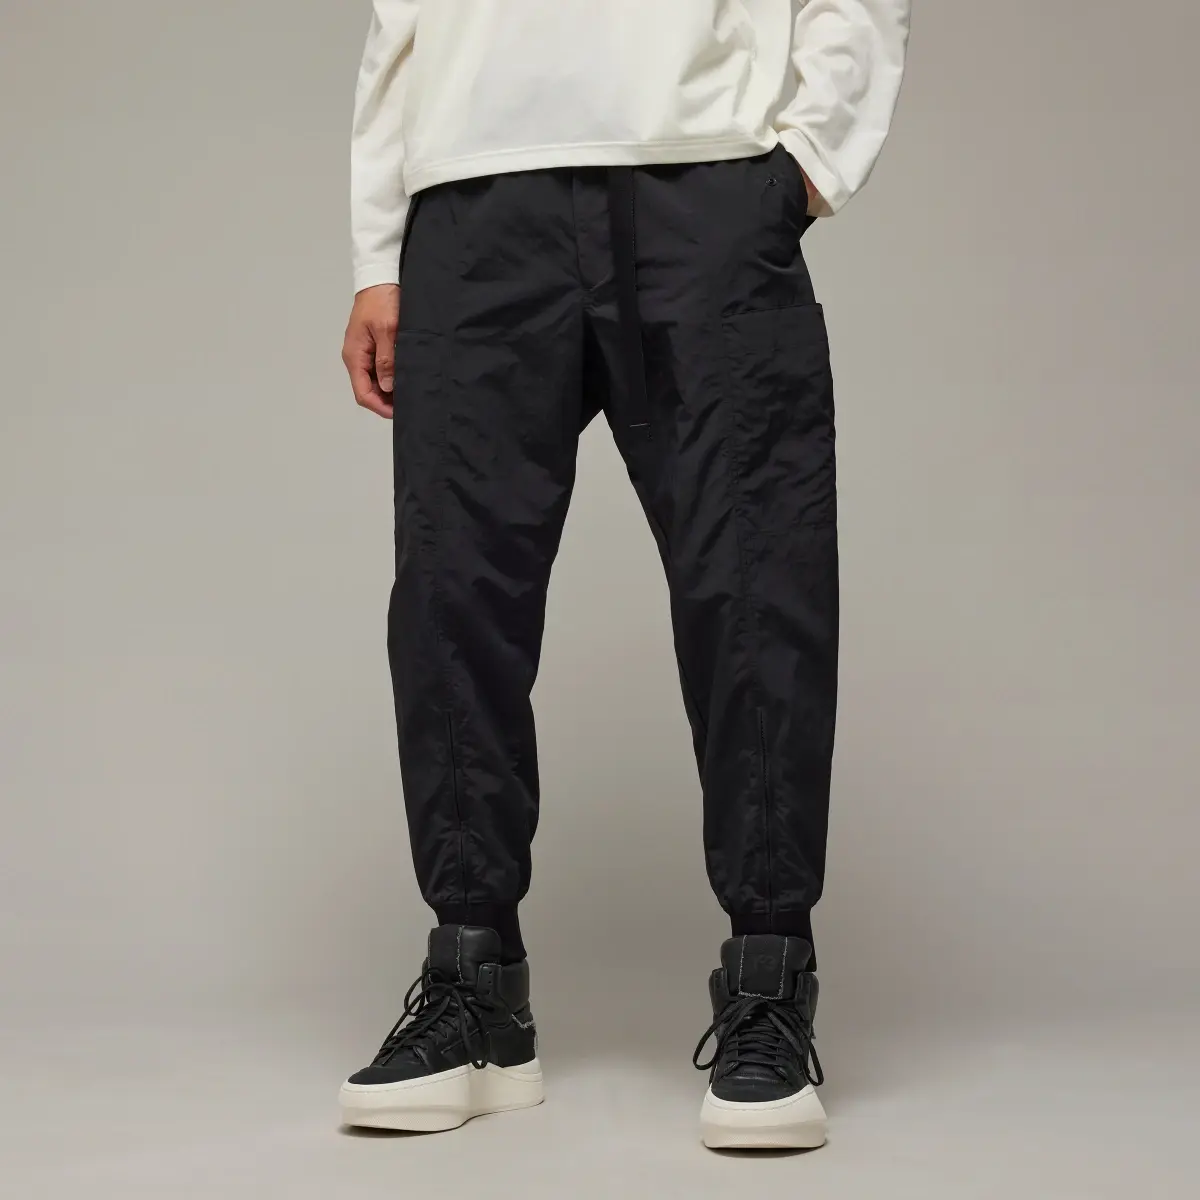 Adidas Y-3 Crinkle Nylon Cuffed Pants. 1